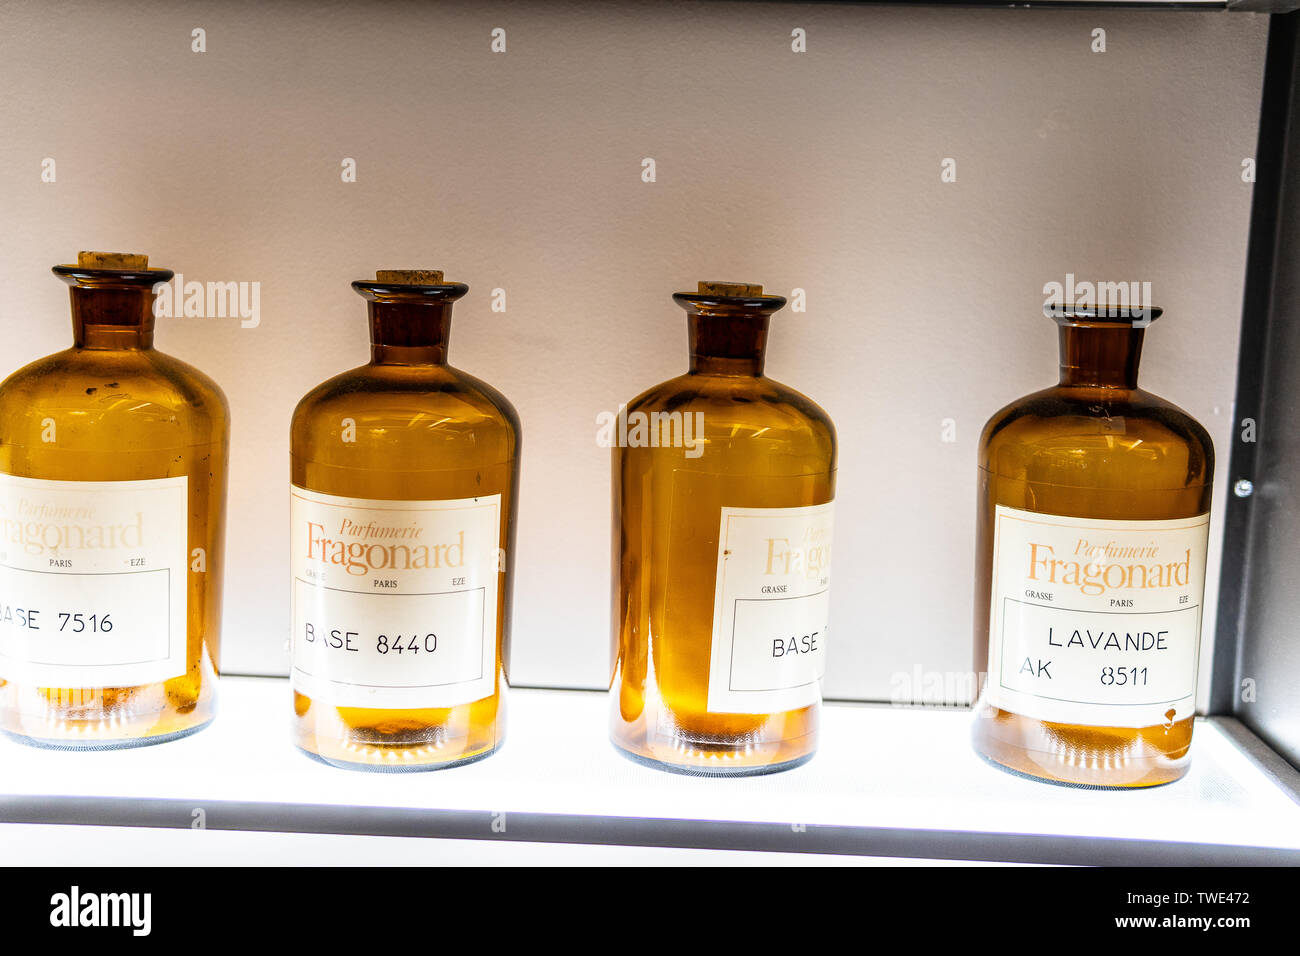 Paris, France, Octobre 09, 2018 : Musée du parfum Fragonard, La Maison de vente de produits de parfumerie Fragonard, exposition, composants, histoire de parfum Banque D'Images